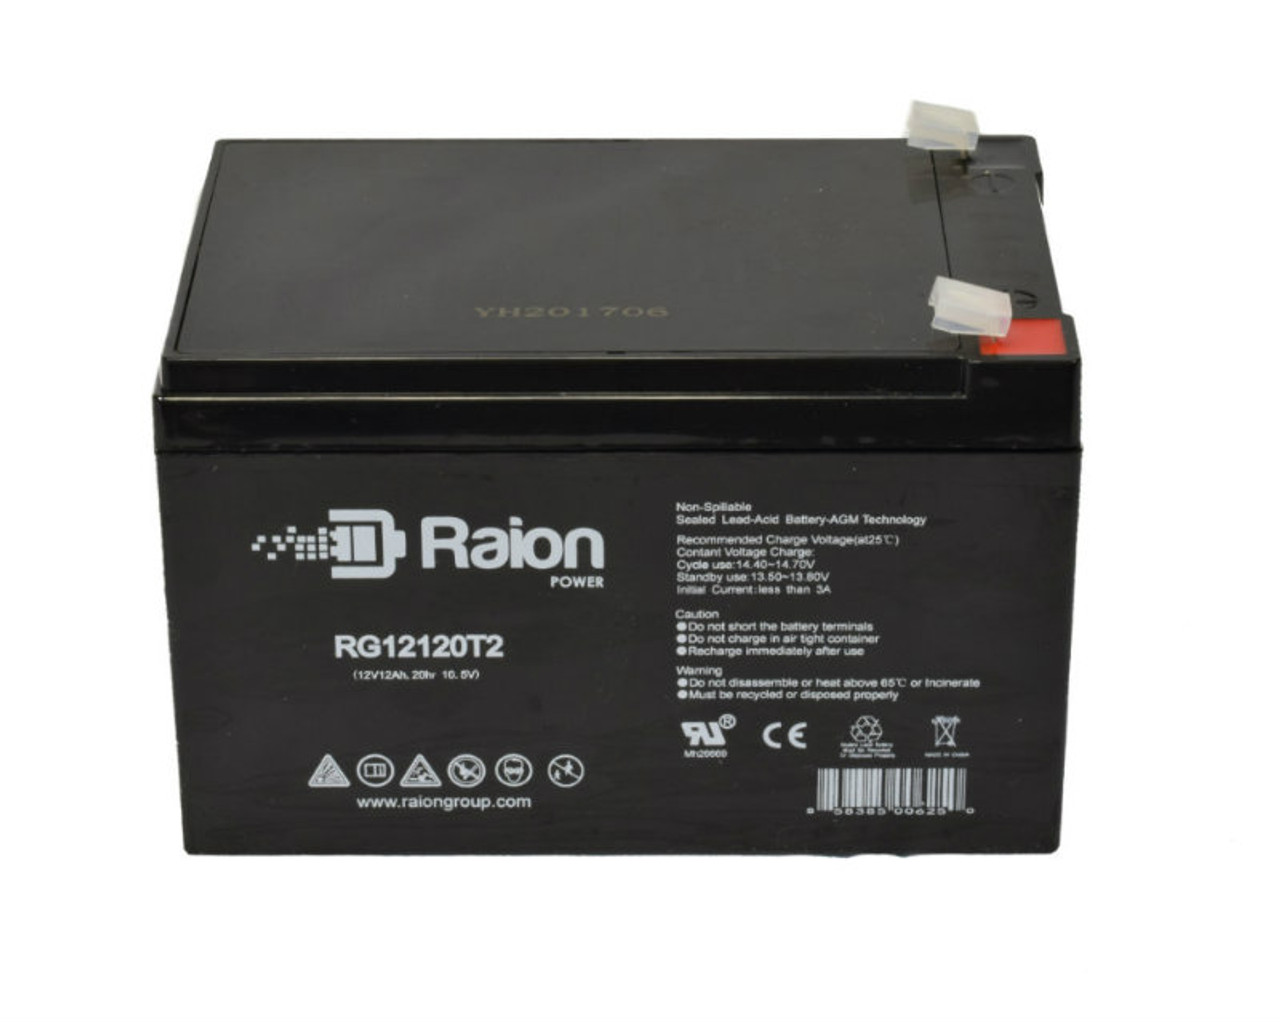 Raion Power RG12120T2 SLA Battery for Altronix SMP10PM24P8